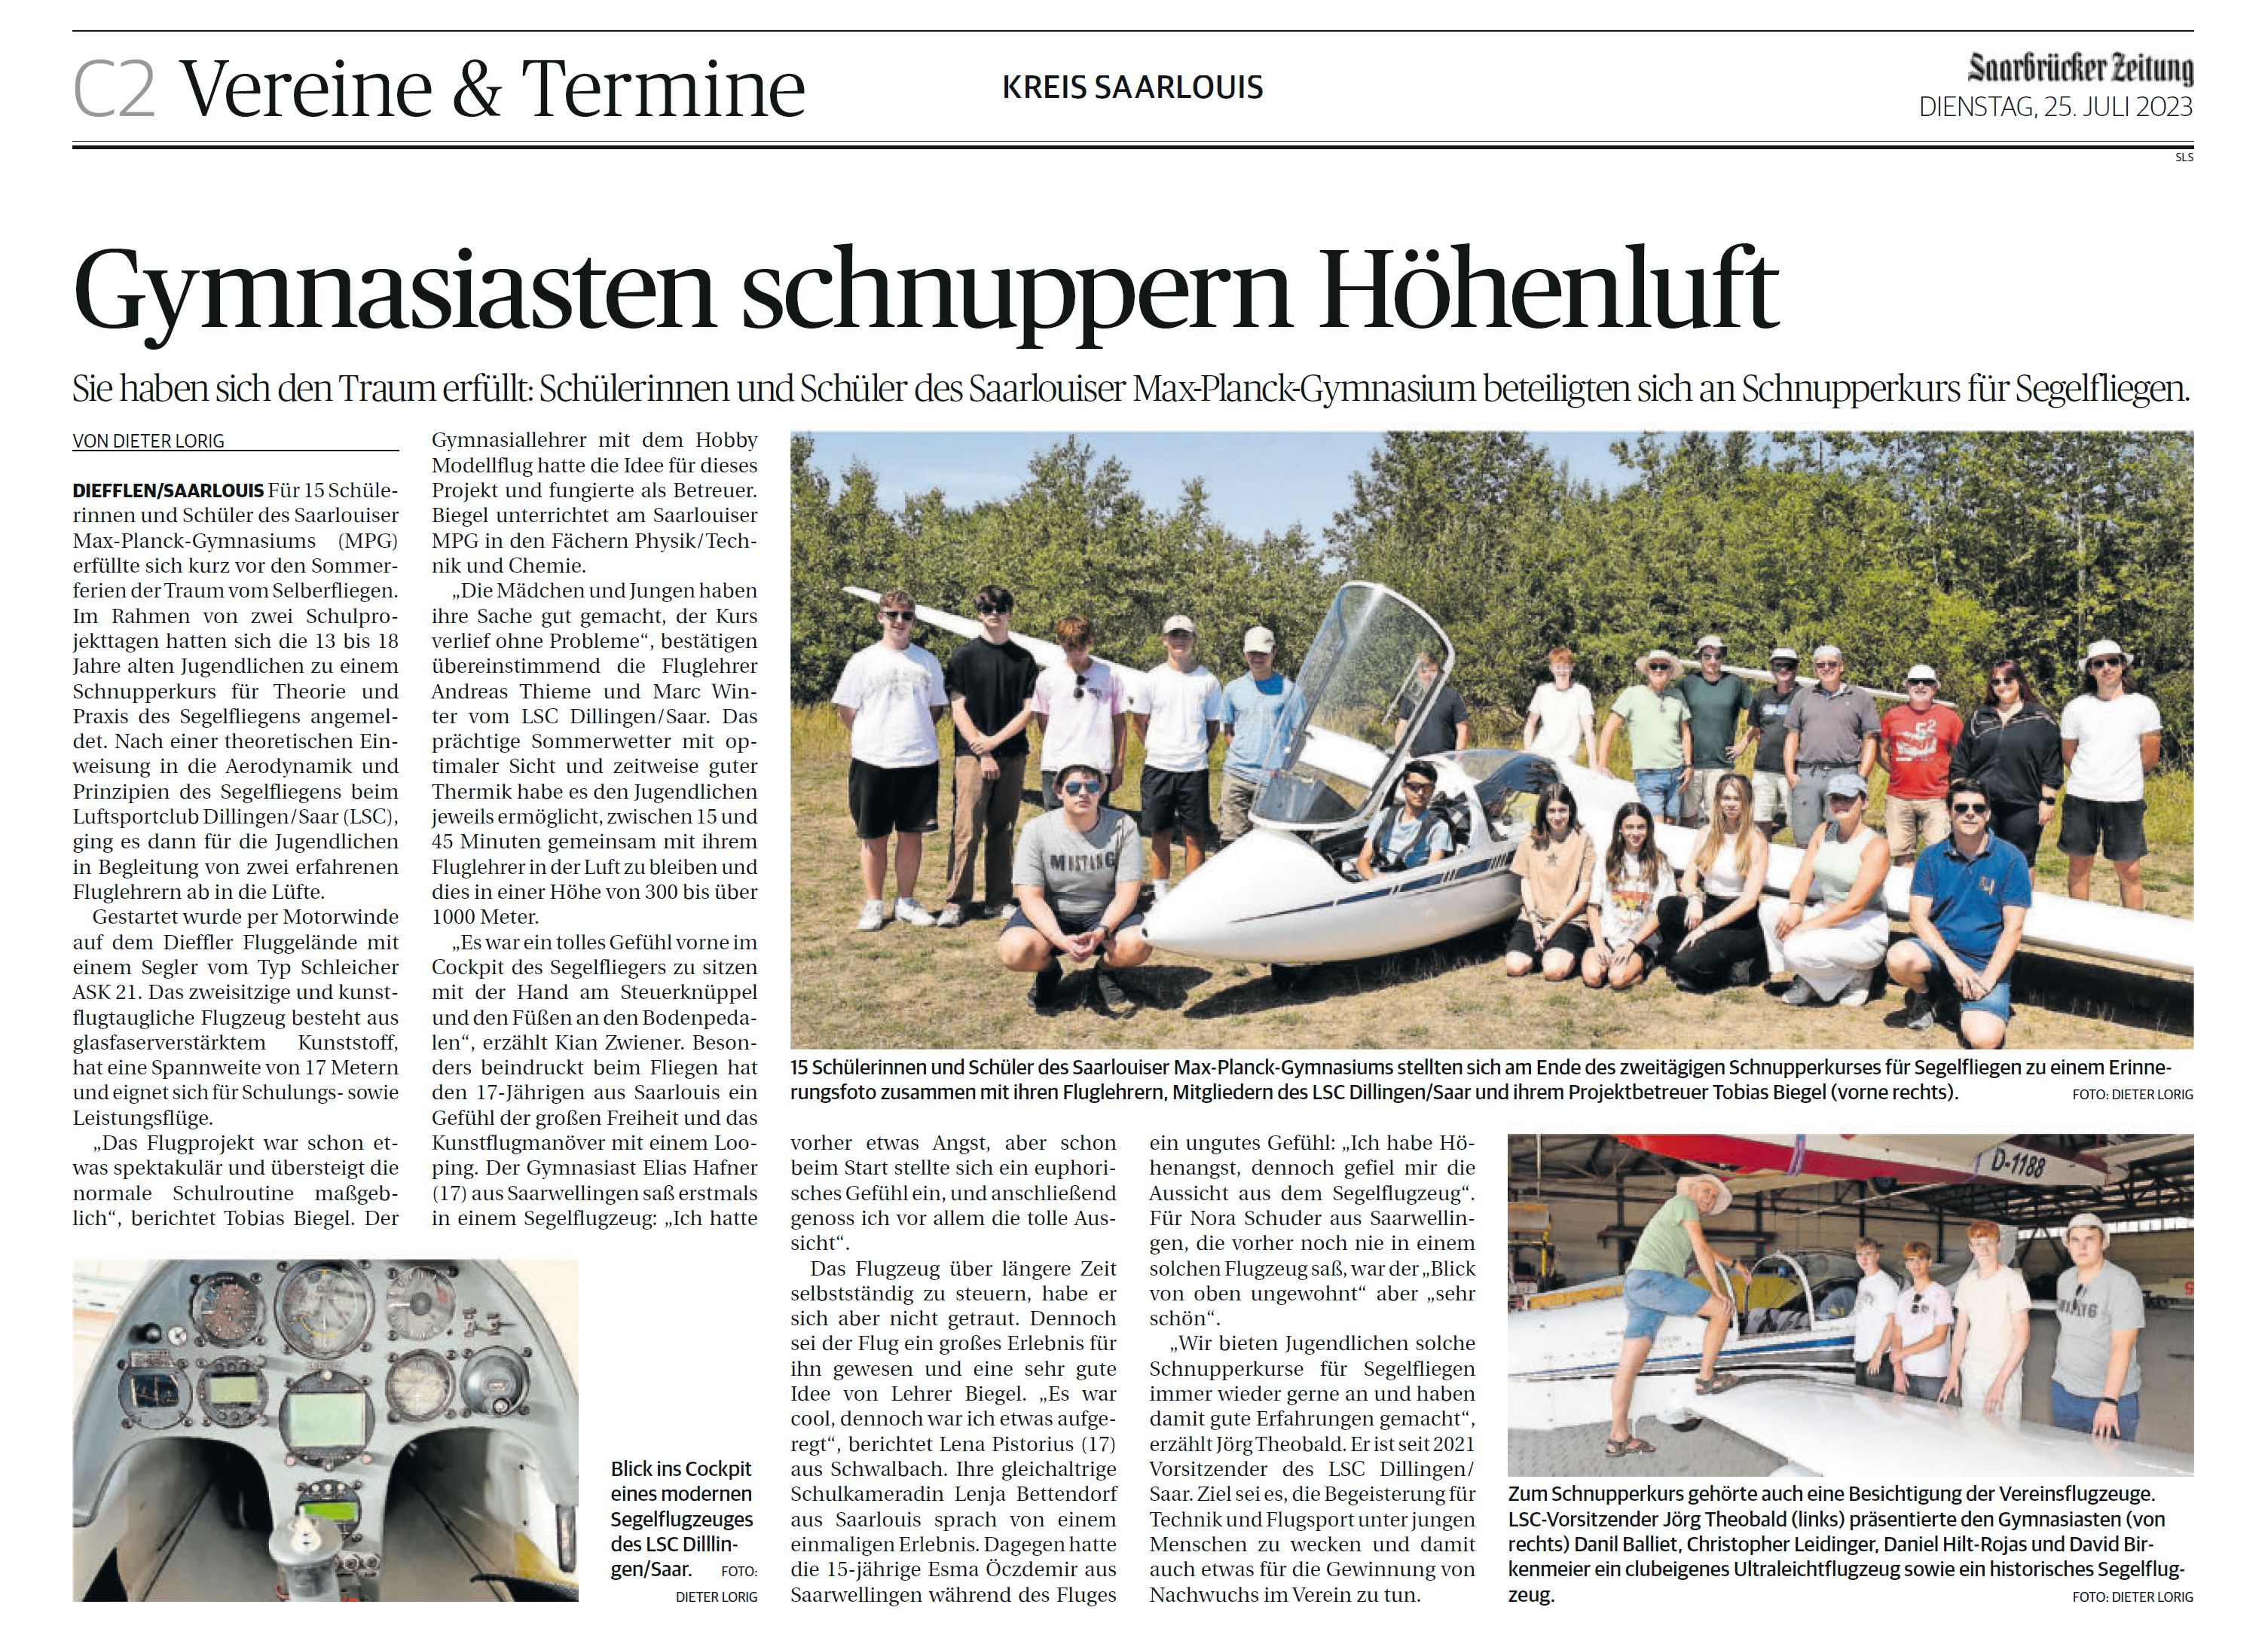 Saarbrücker Zeitung v. 25.07.2023 - Gymnasiasten schnuppern Höhenluft